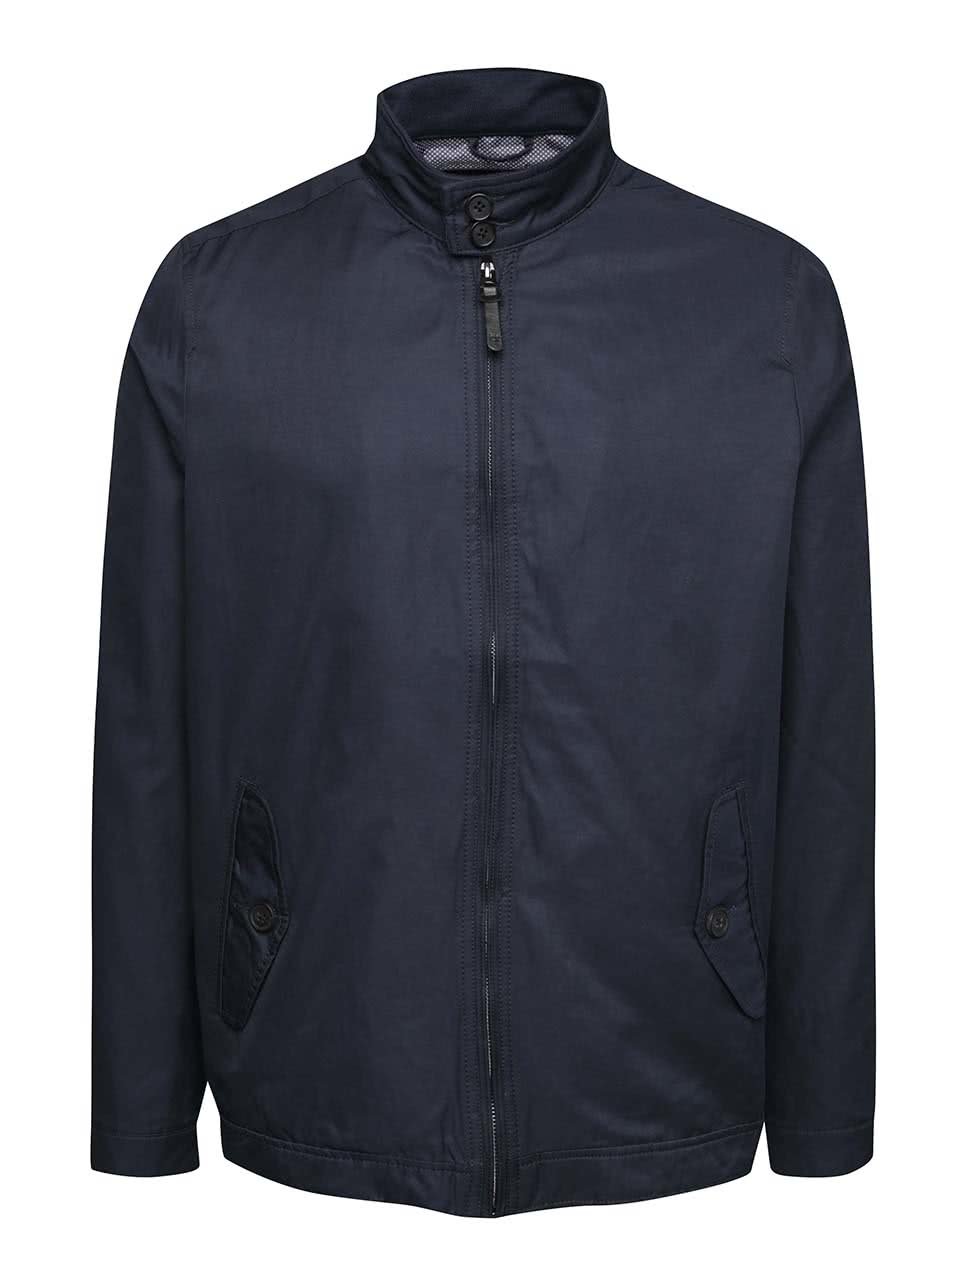 Tmavě modrá lehká bunda na zip Burton Menswear London